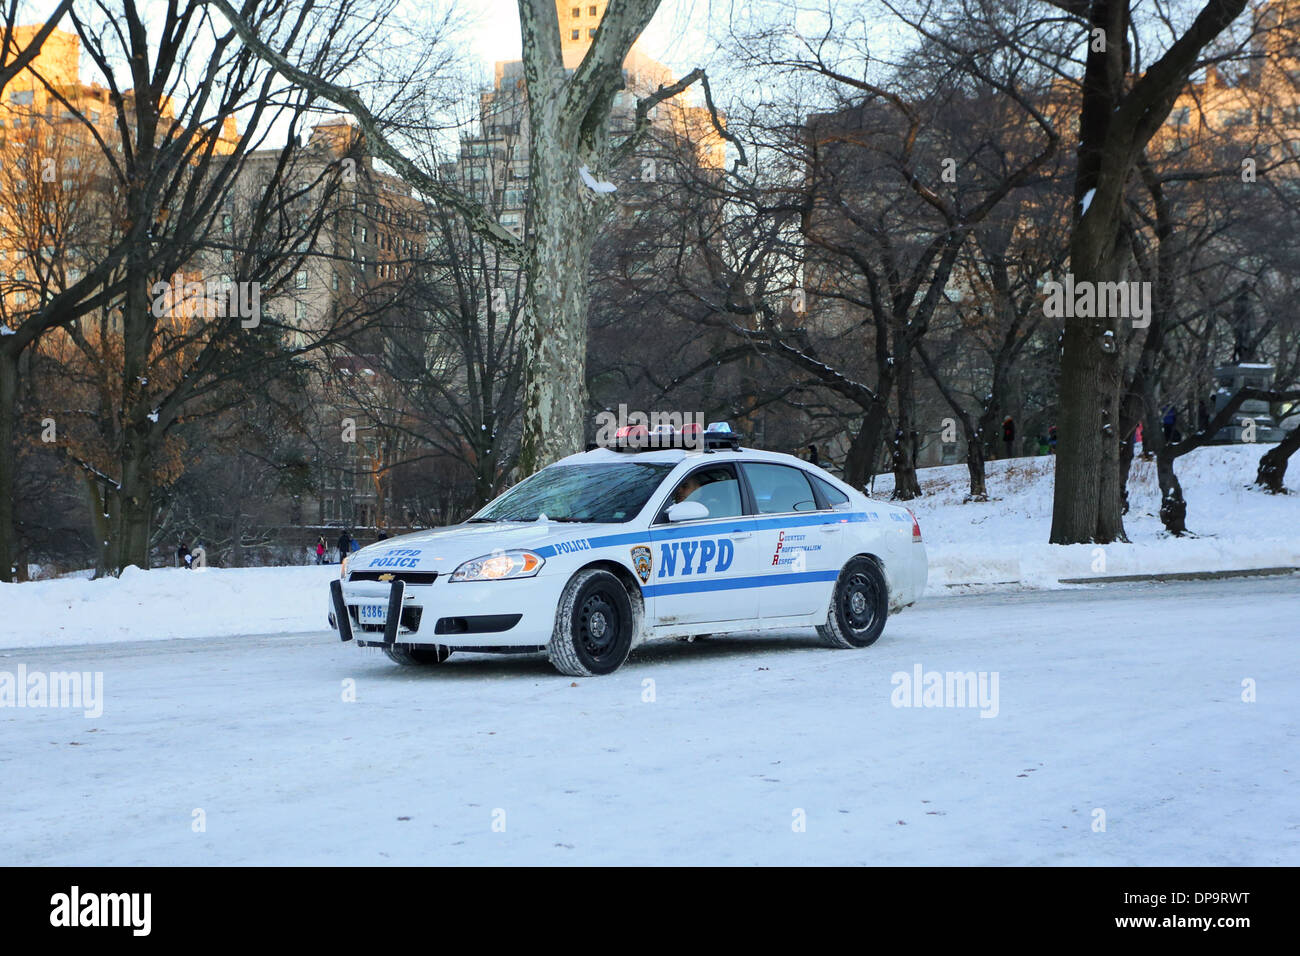 Une voiture de police de New York sur une route couverte de neige Banque D'Images